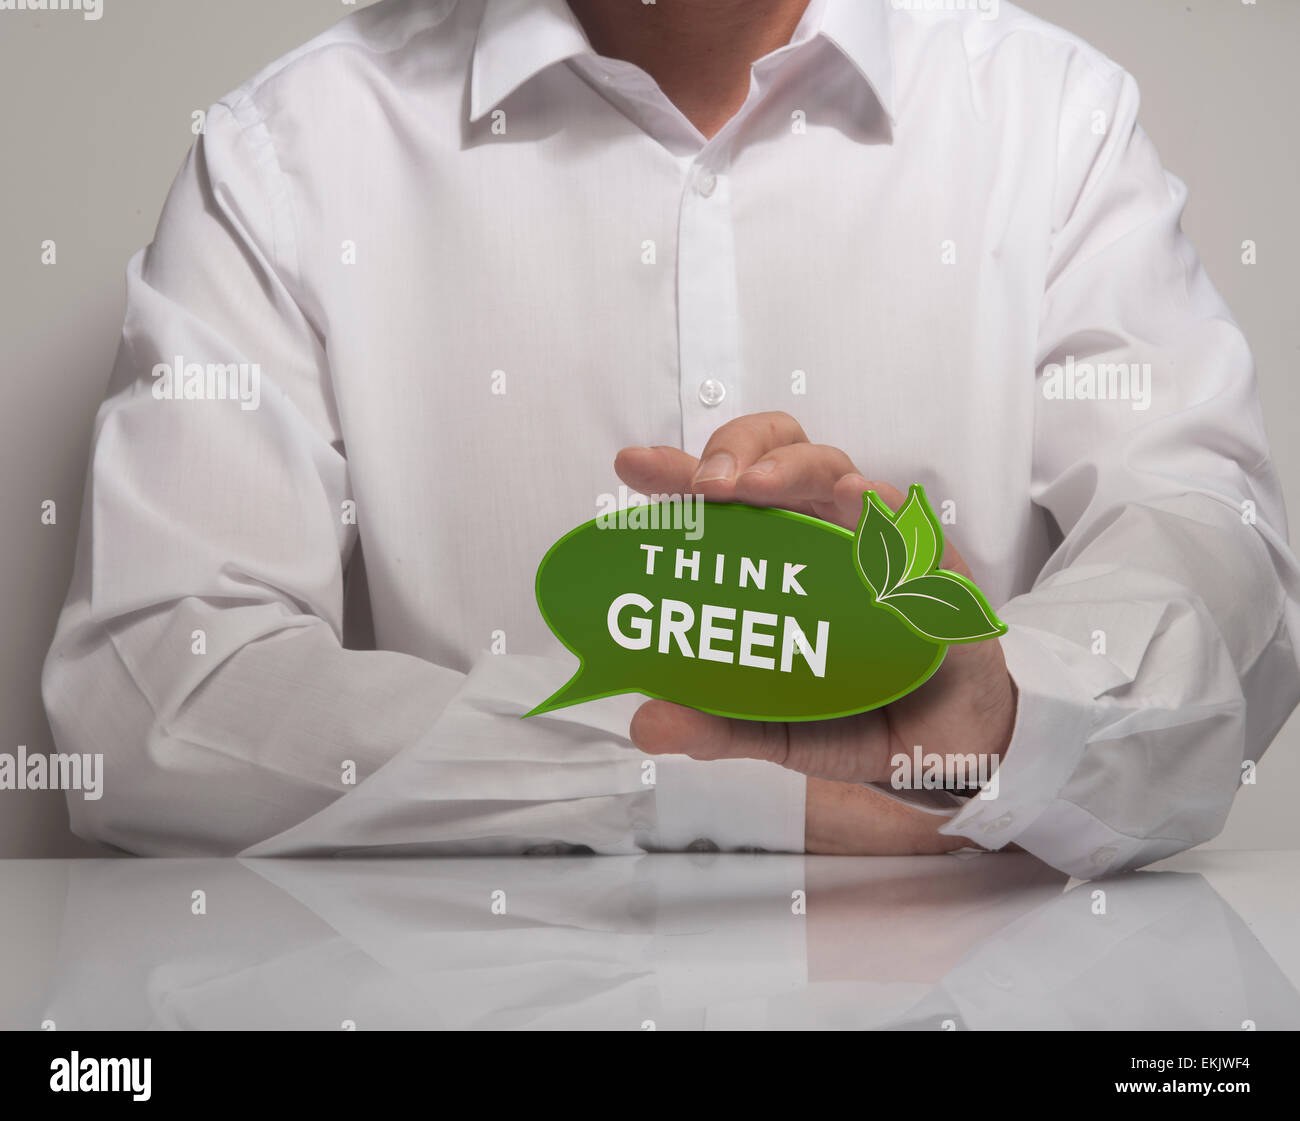 Immagine di un man mano che tiene il parlato palloncino con il verde textthink, camicia bianca. Concetto di ecologia e ambiente preservatio Foto Stock